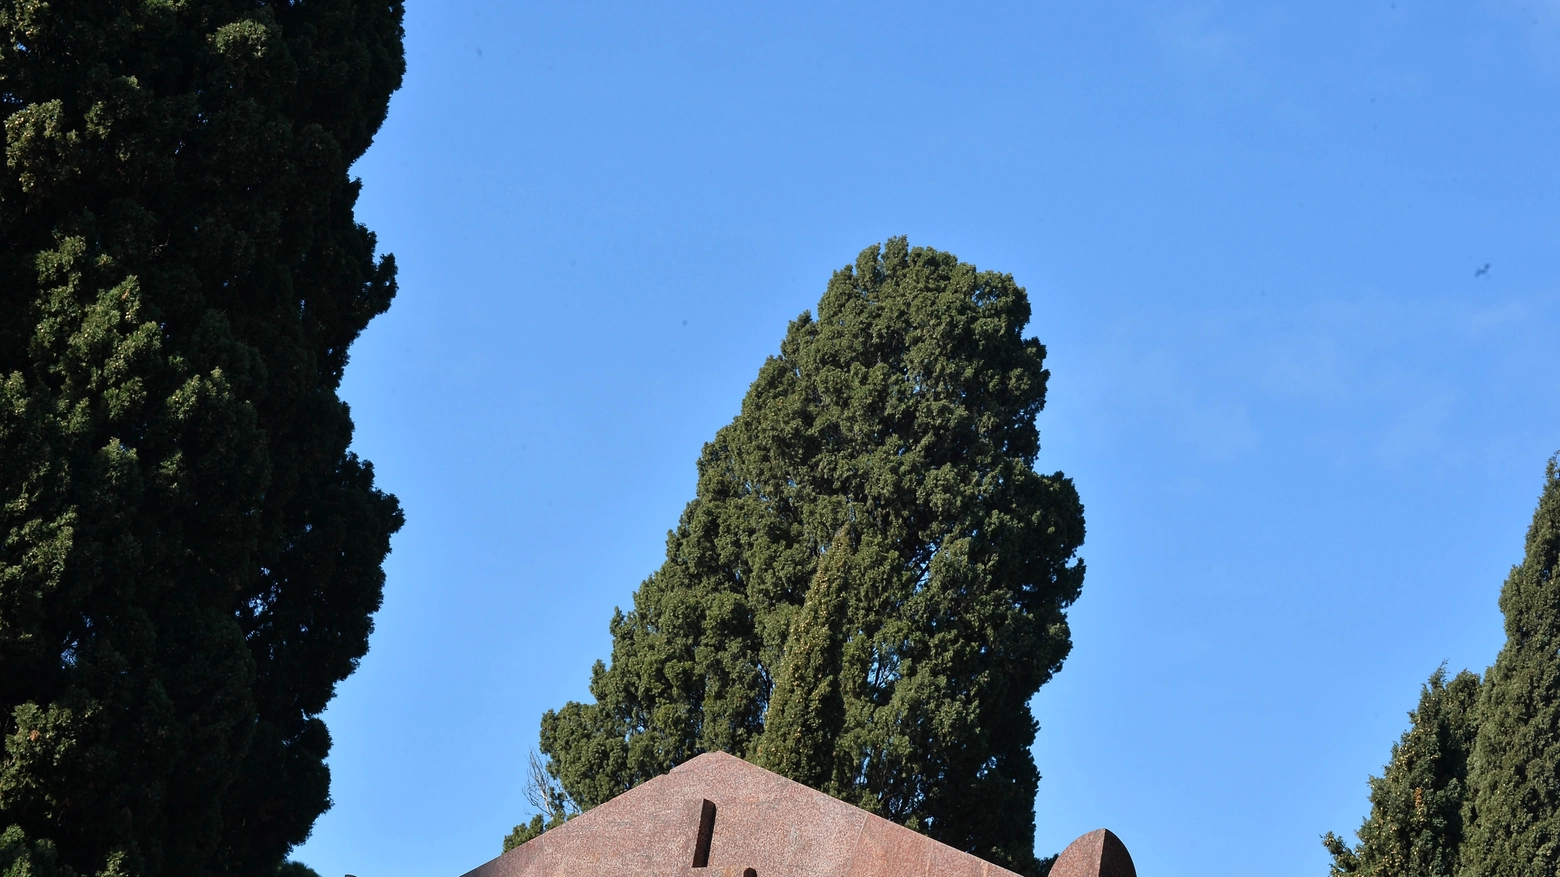 Cimitero monumentale del Verano, Roma